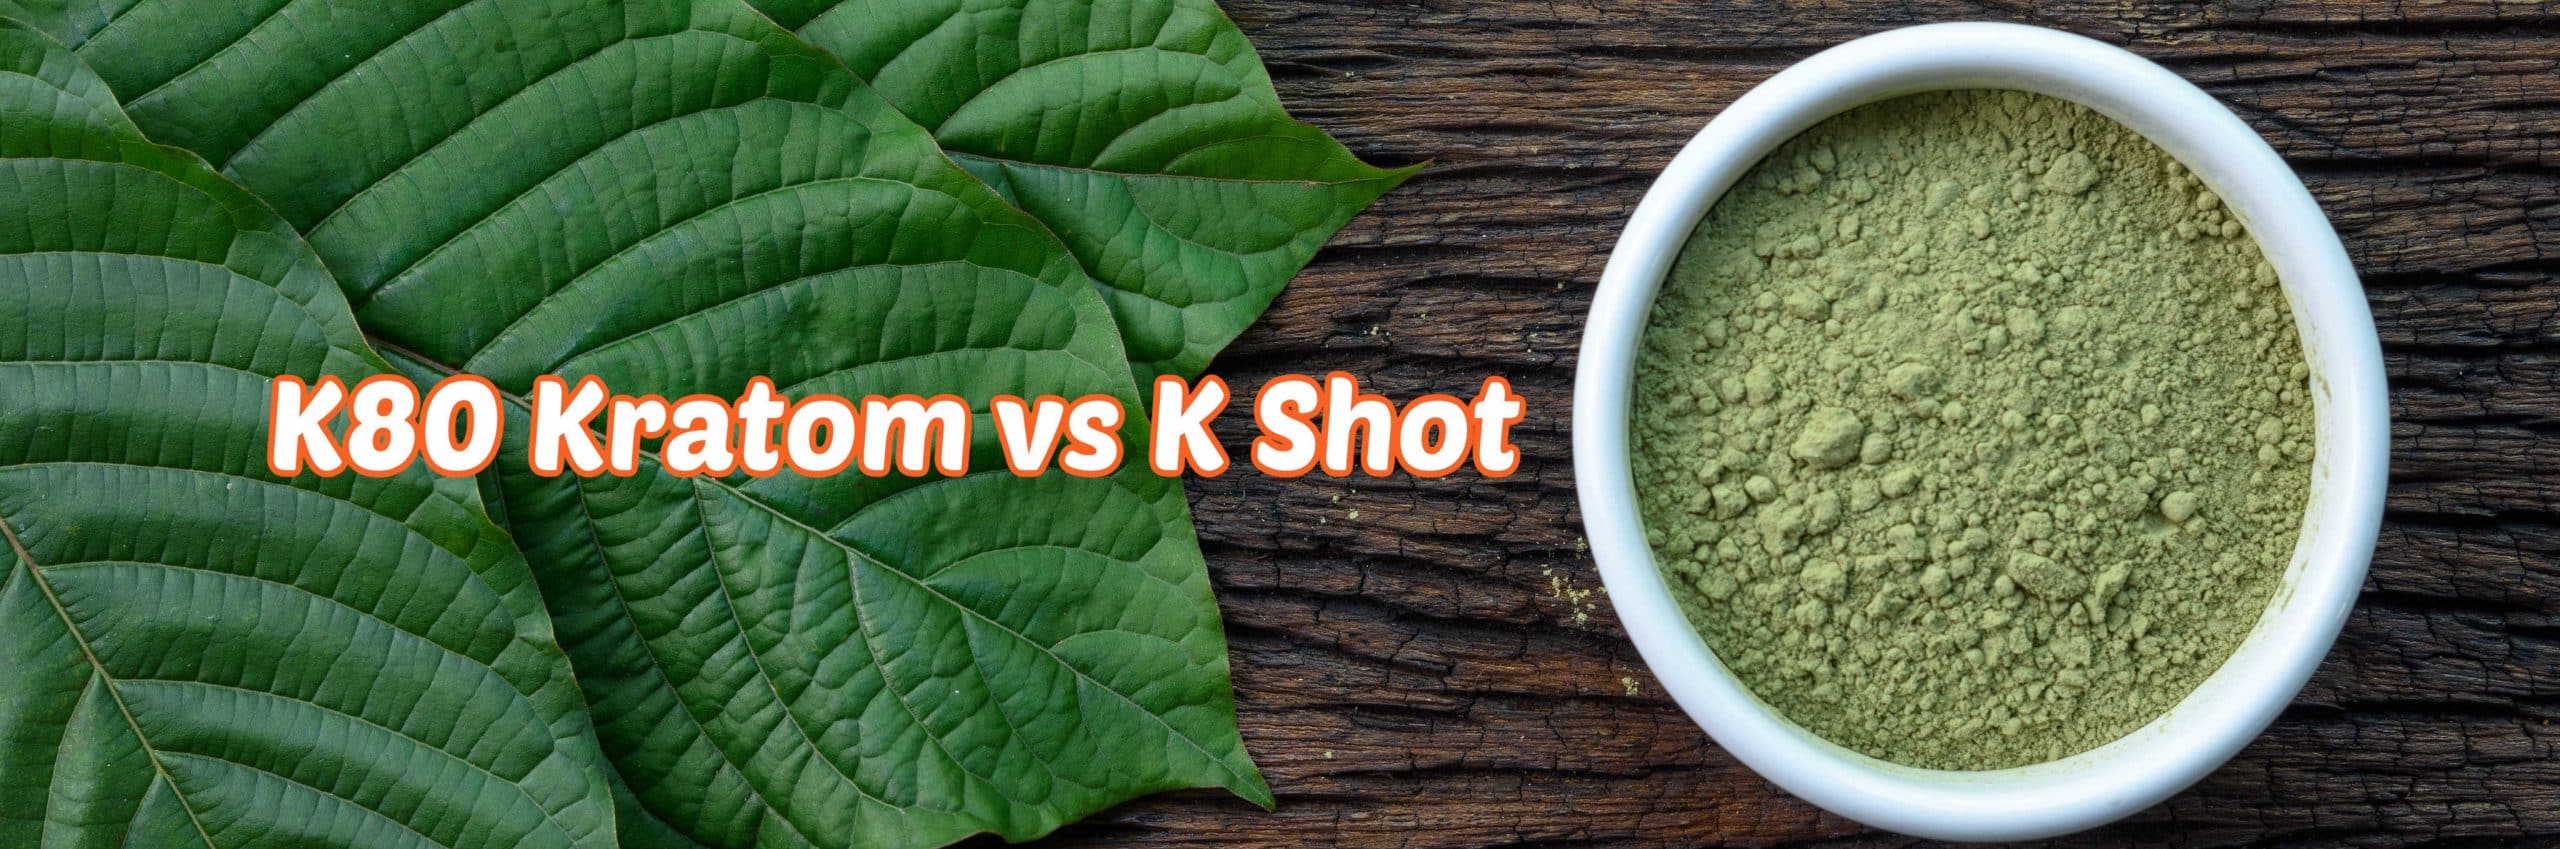 image of k80 kratom vs k shot